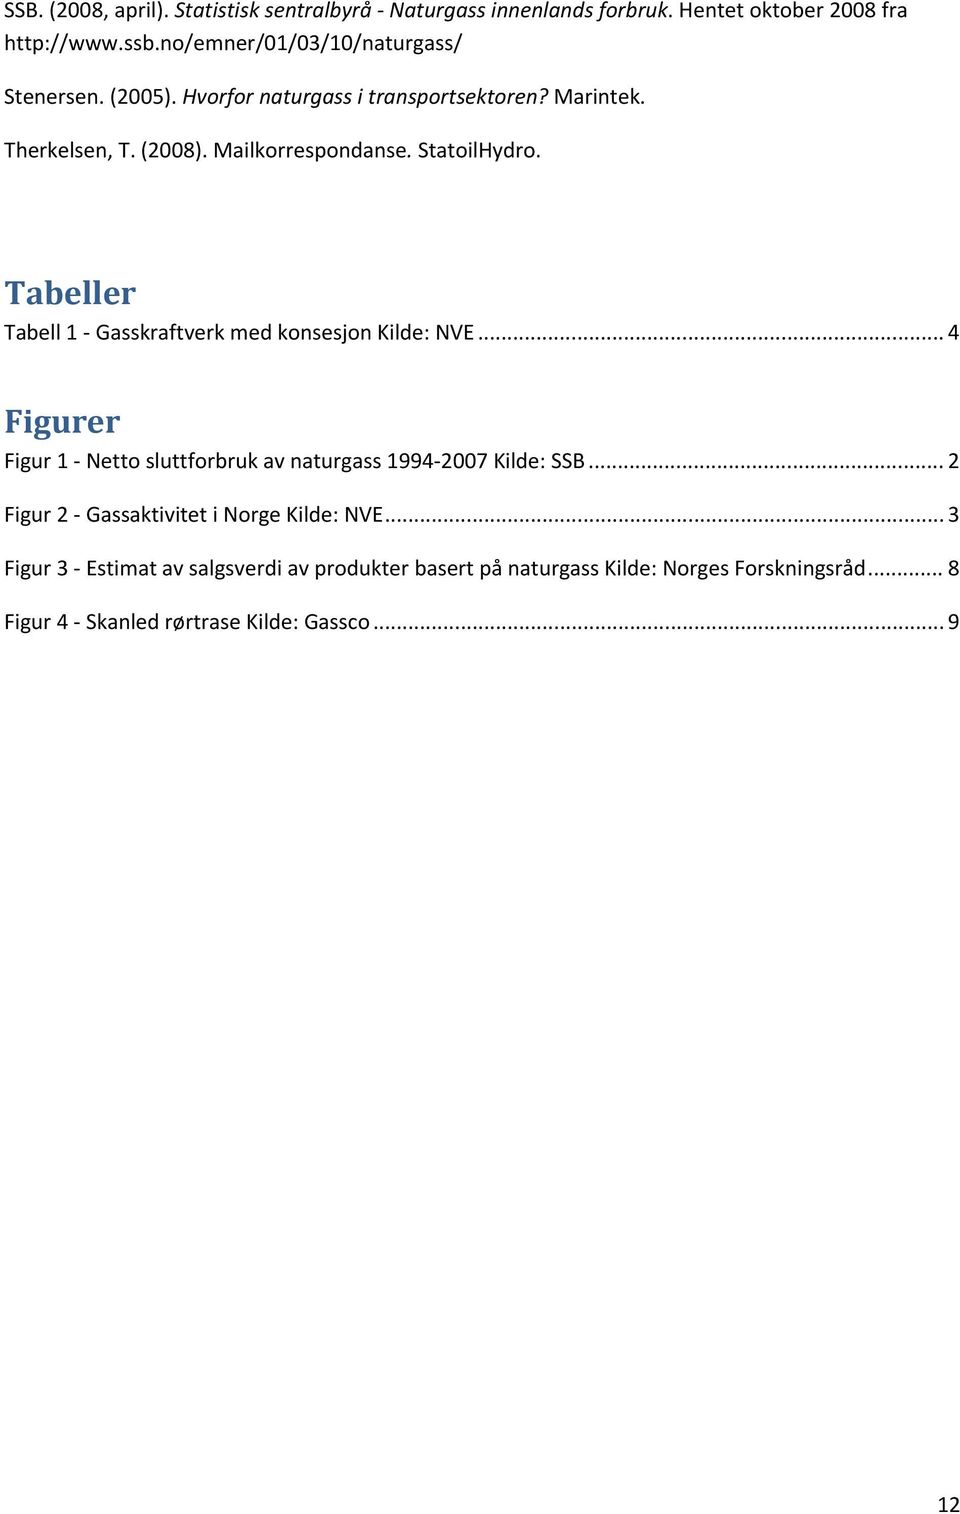 StatoilHydro. Tabeller Tabell1"GasskraftverkmedkonsesjonKilde:NVE...4 Figurer Figur1"Nettosluttforbrukavnaturgass1994"2007Kilde:SSB.